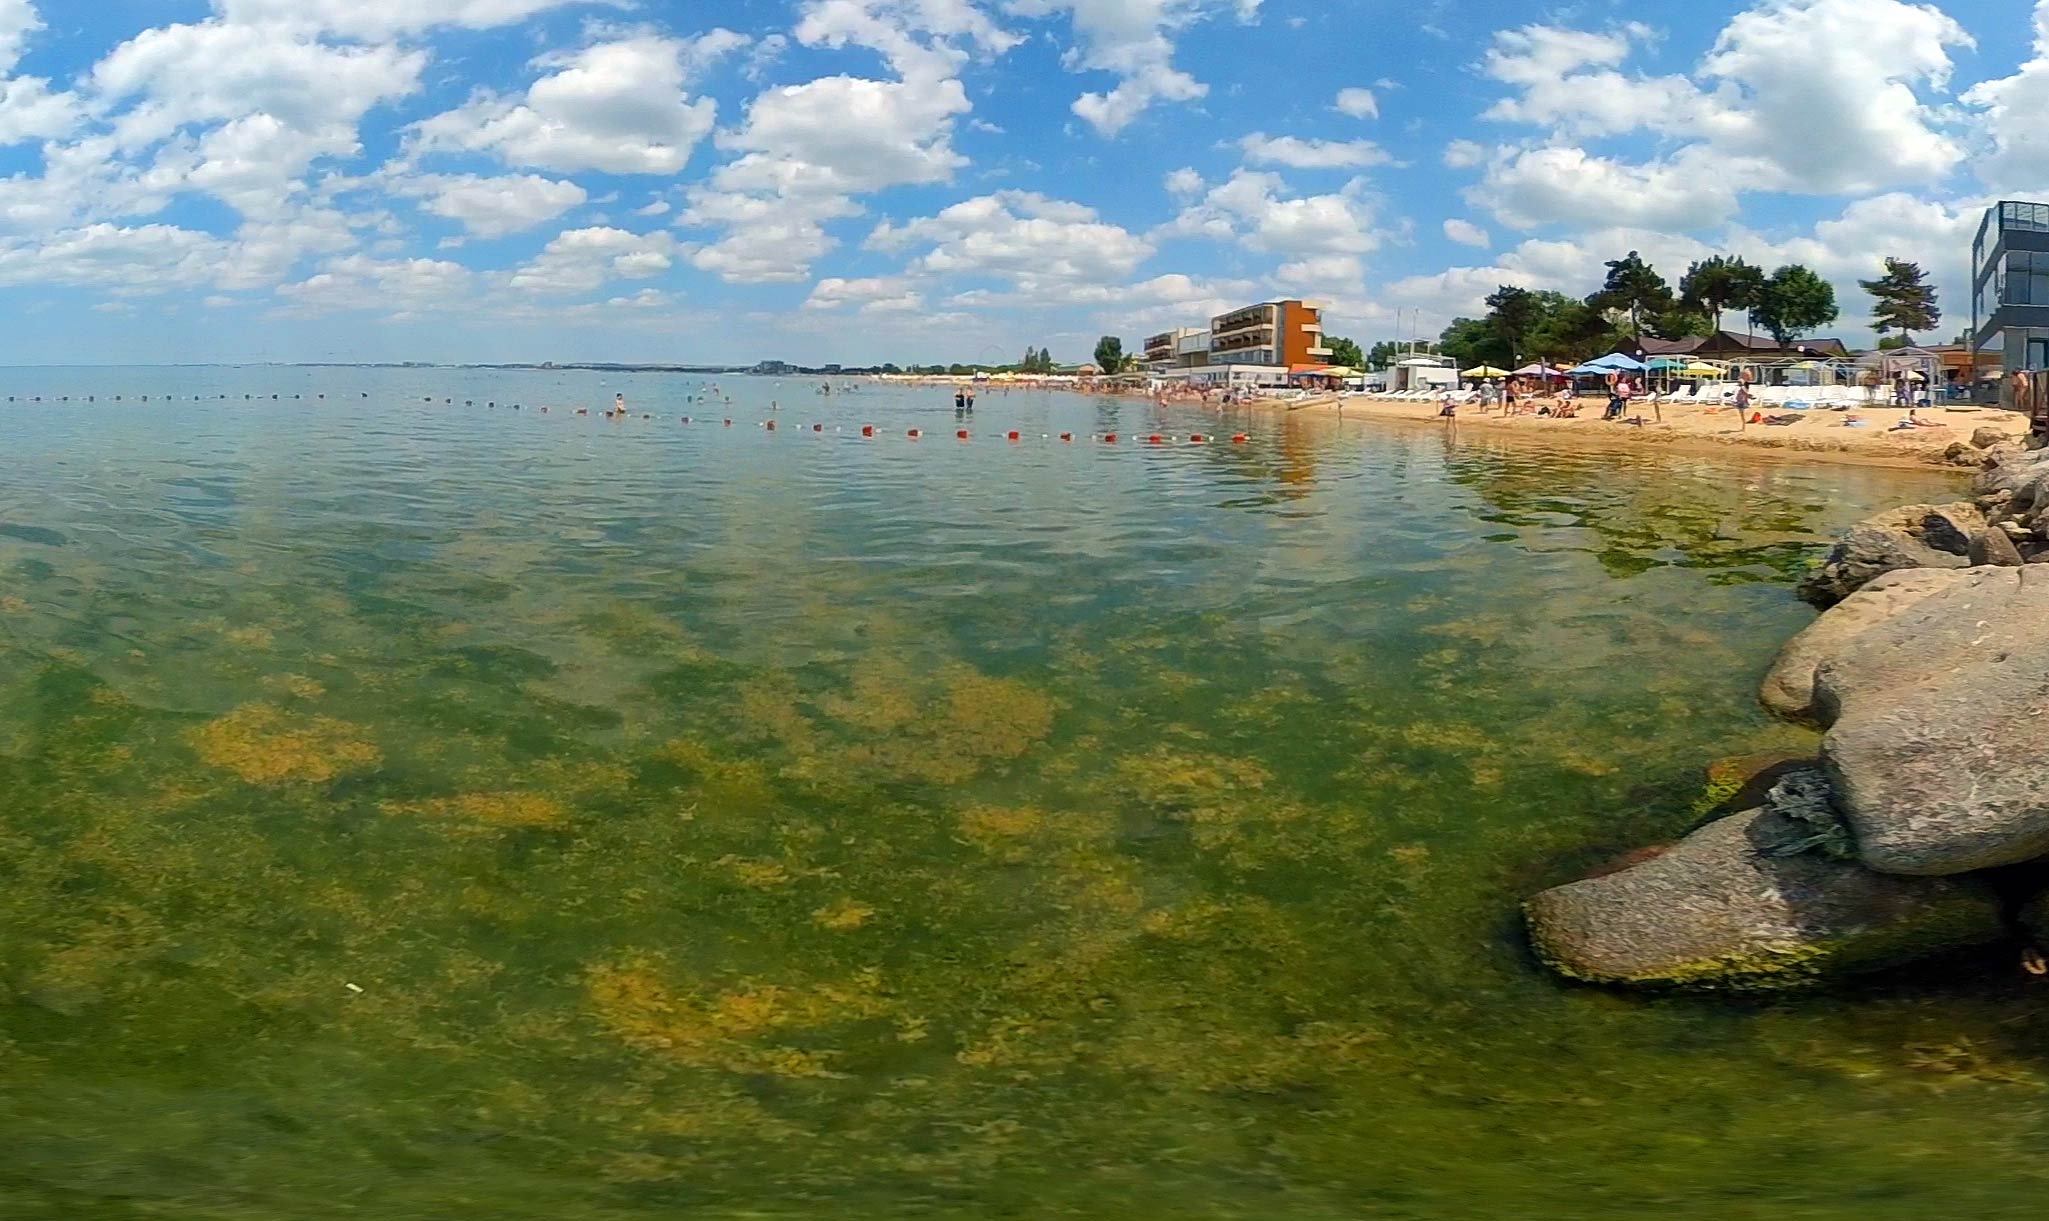 Море в Анапе цветёт в августе 2019 или нет: можно ли купаться в период цветения моря